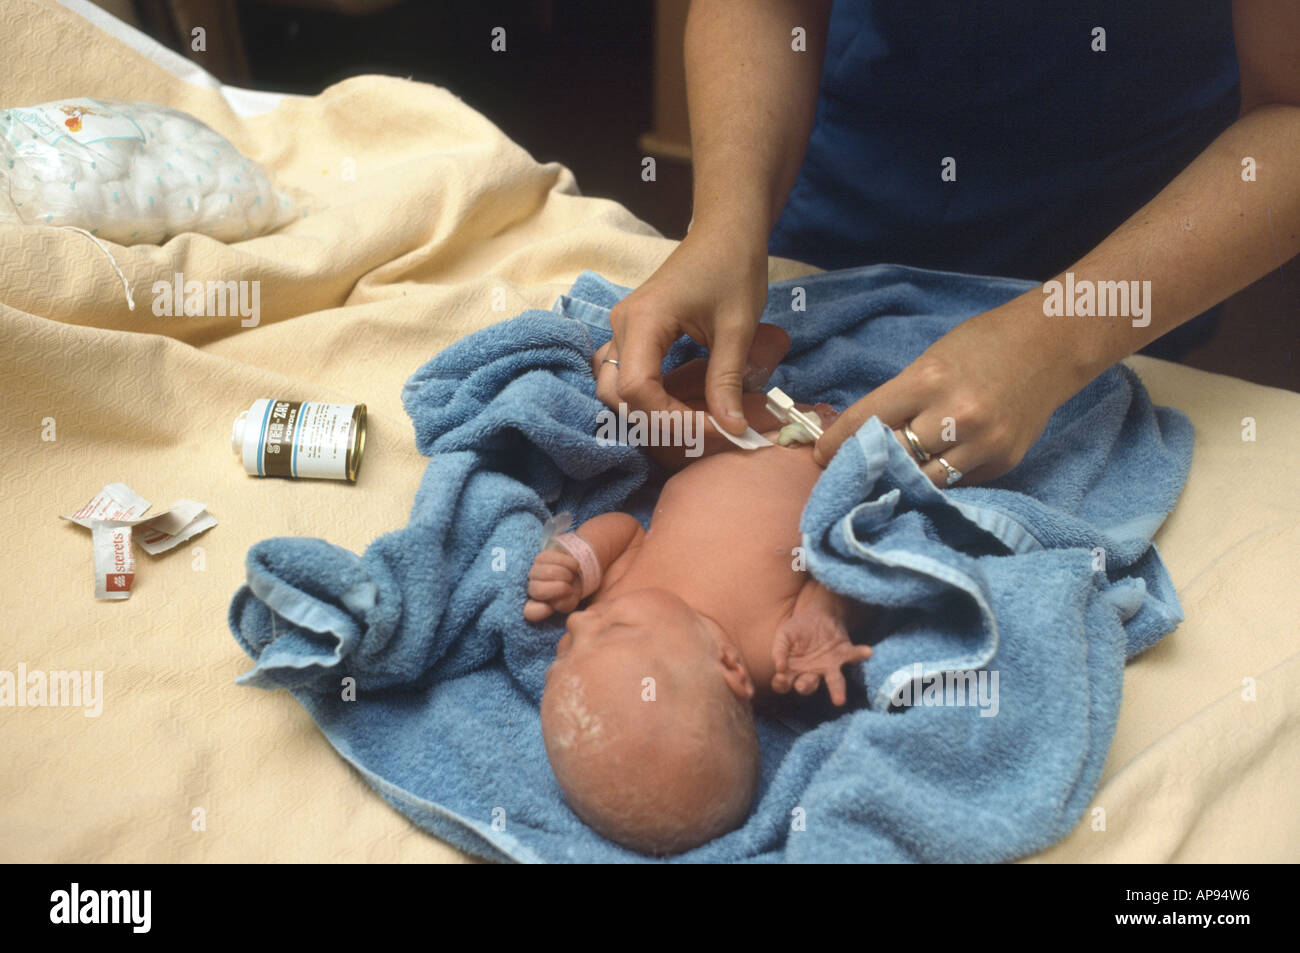 Hebamme Umblical Schnur Neugeborenen im Krankenhaus Reinigung Stockfoto